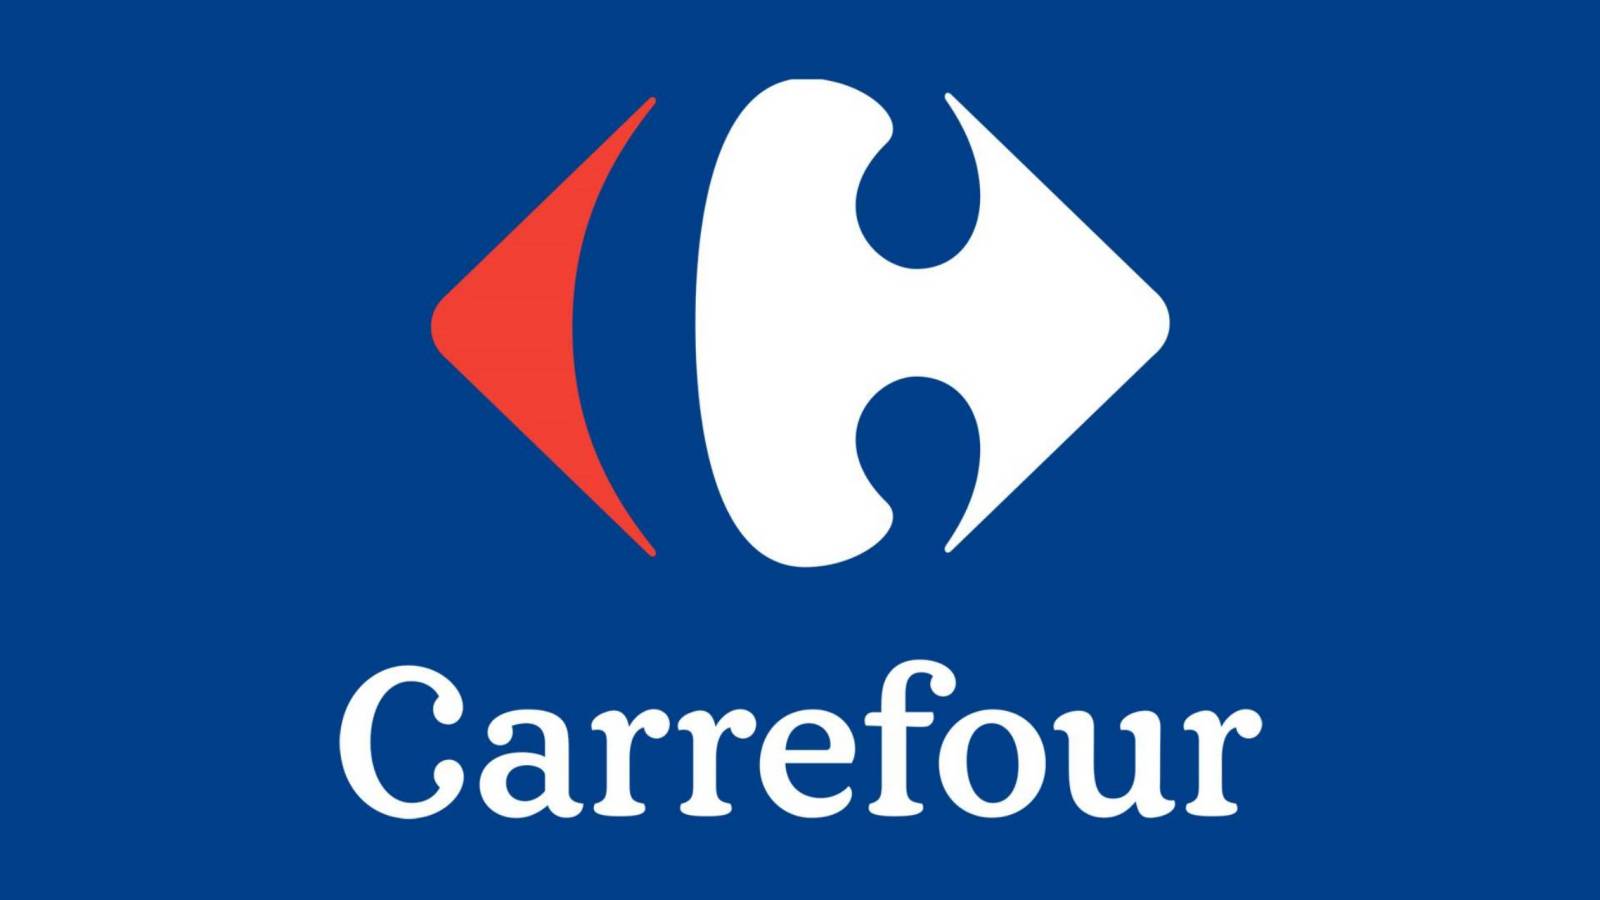 Carrefour-kaarten